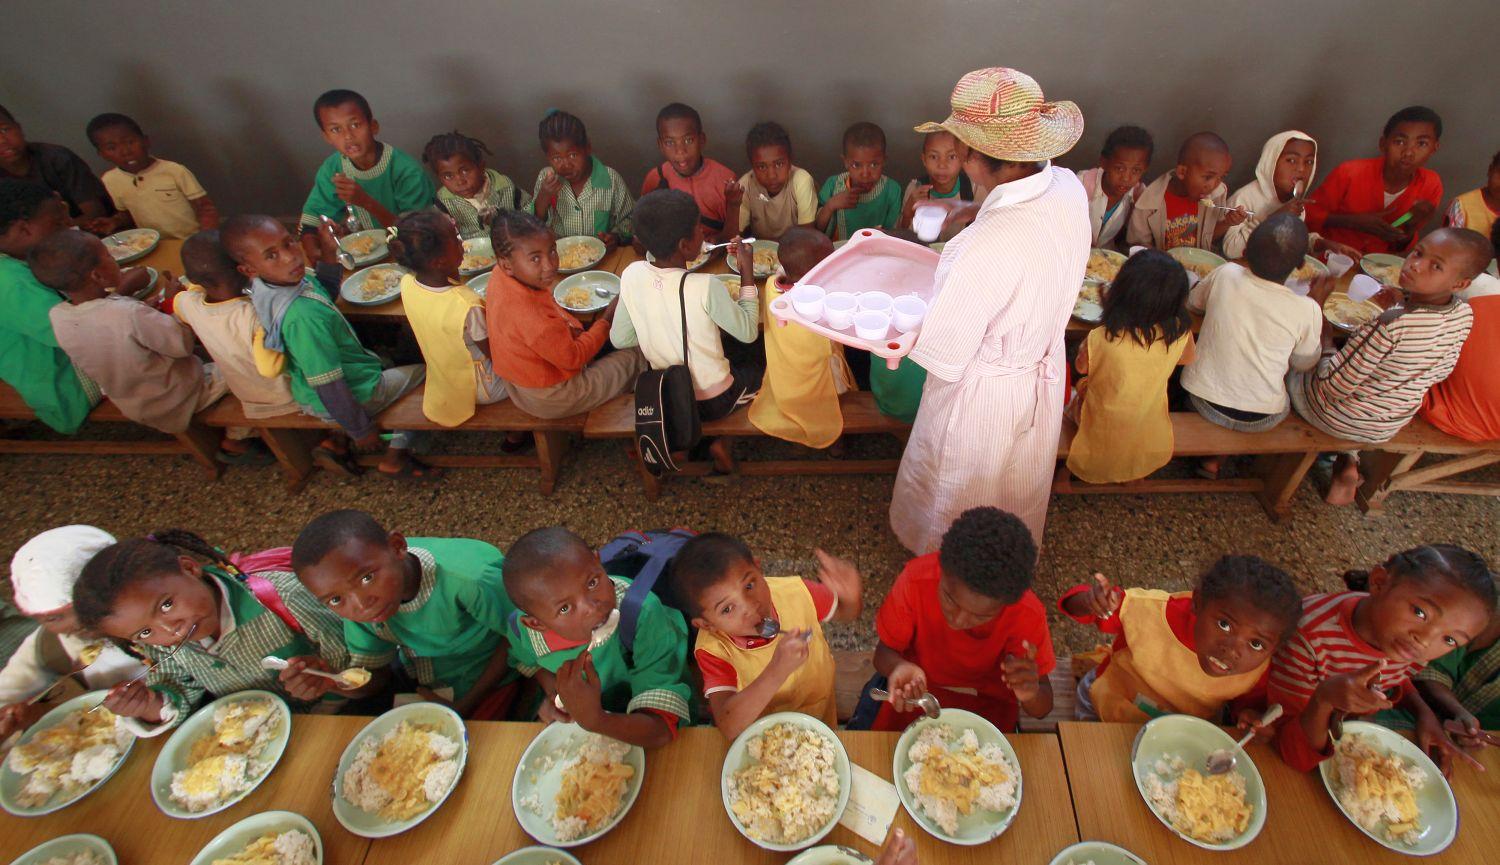 Madagaszkári gyerekek Antananarivo egyik külvárosában. Sok gyerek az ENSZ világélelmezési programjának (WFP) köszönhetően jut ételhez